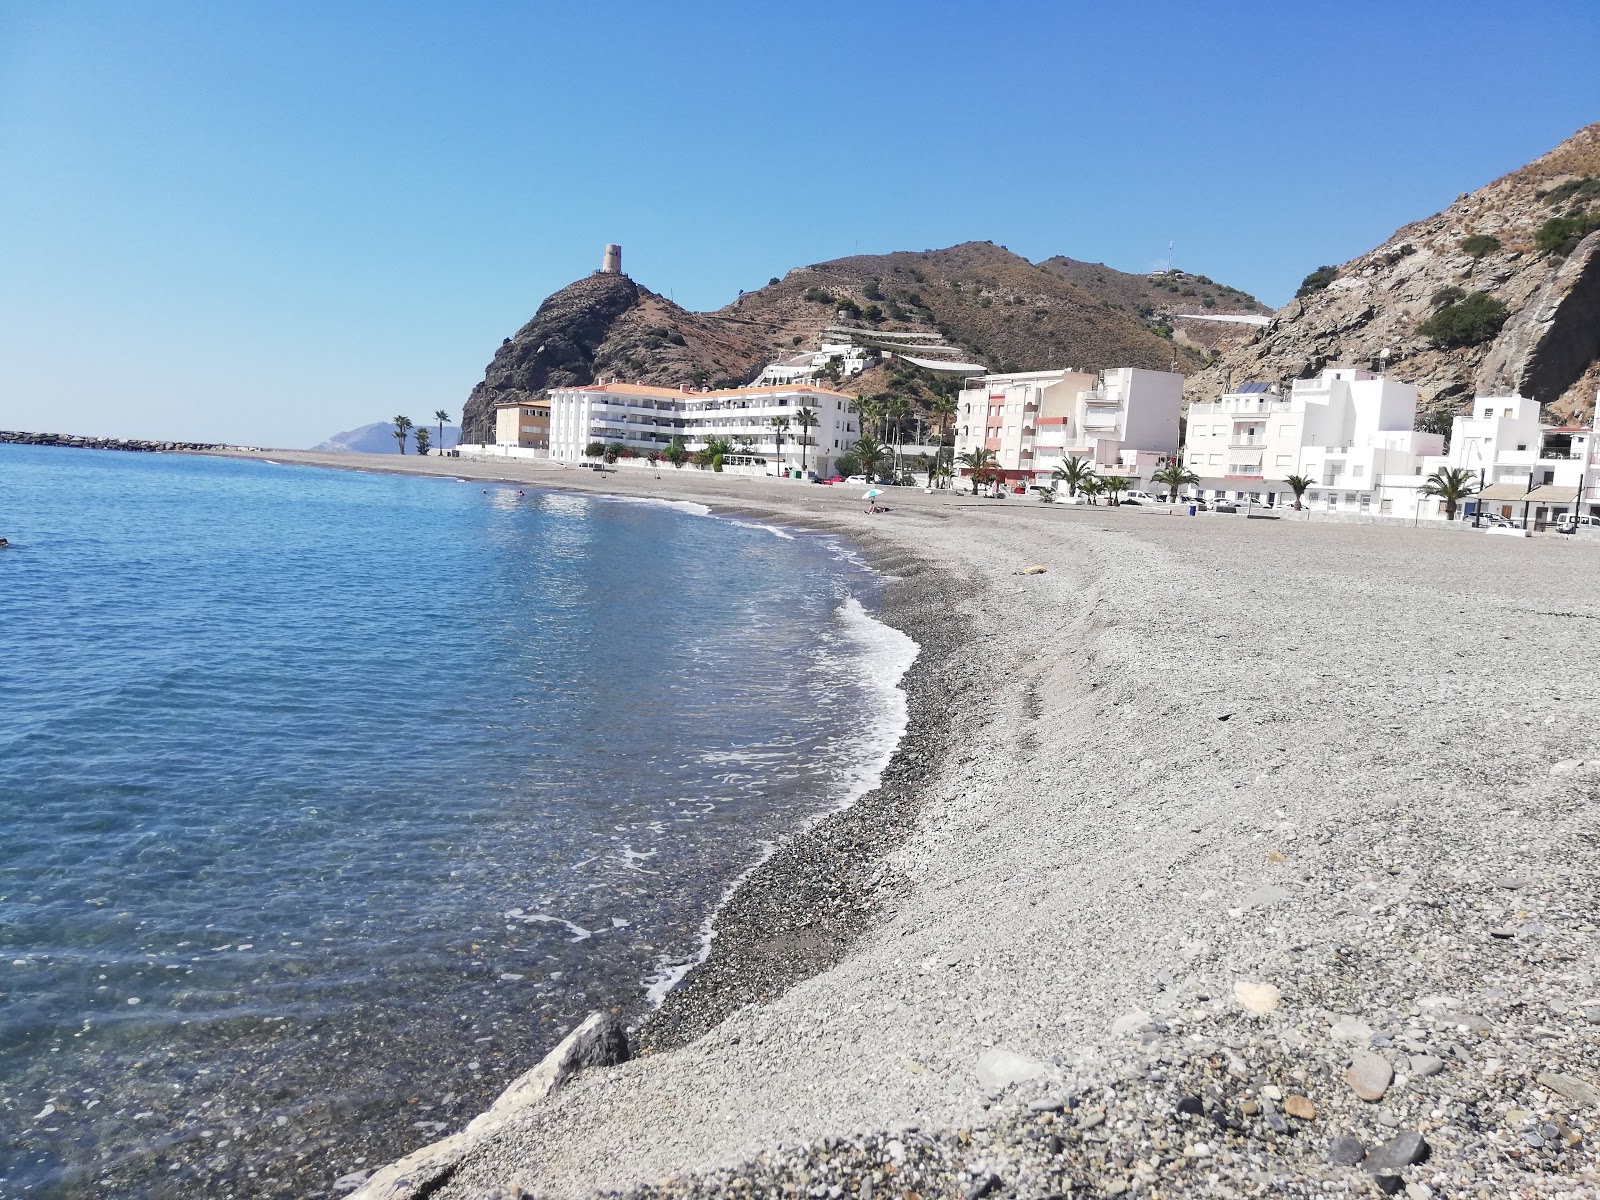 Fotografie cu La MamoLa beach cu o suprafață de apă pură albastră